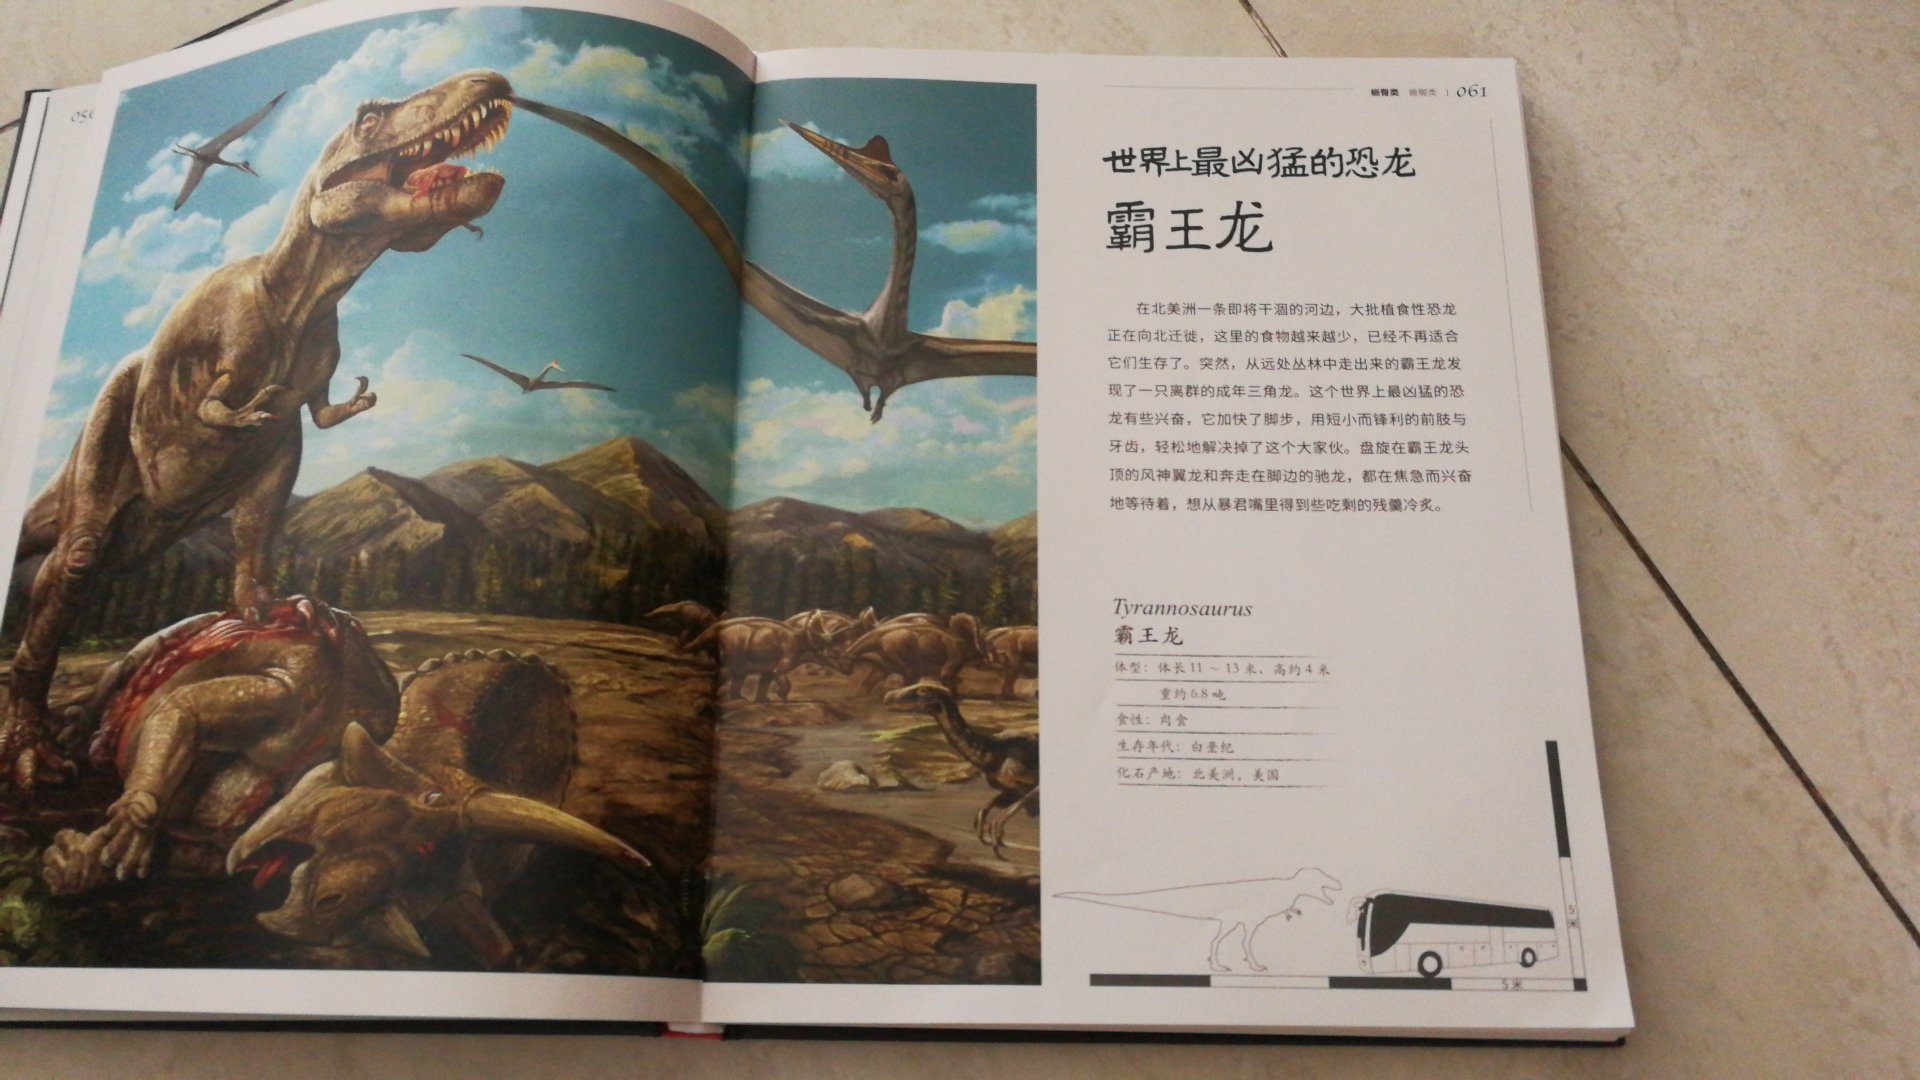 孩子是个小恐龙迷，这本书他很喜欢，里面恐龙种类齐全，图片也很好